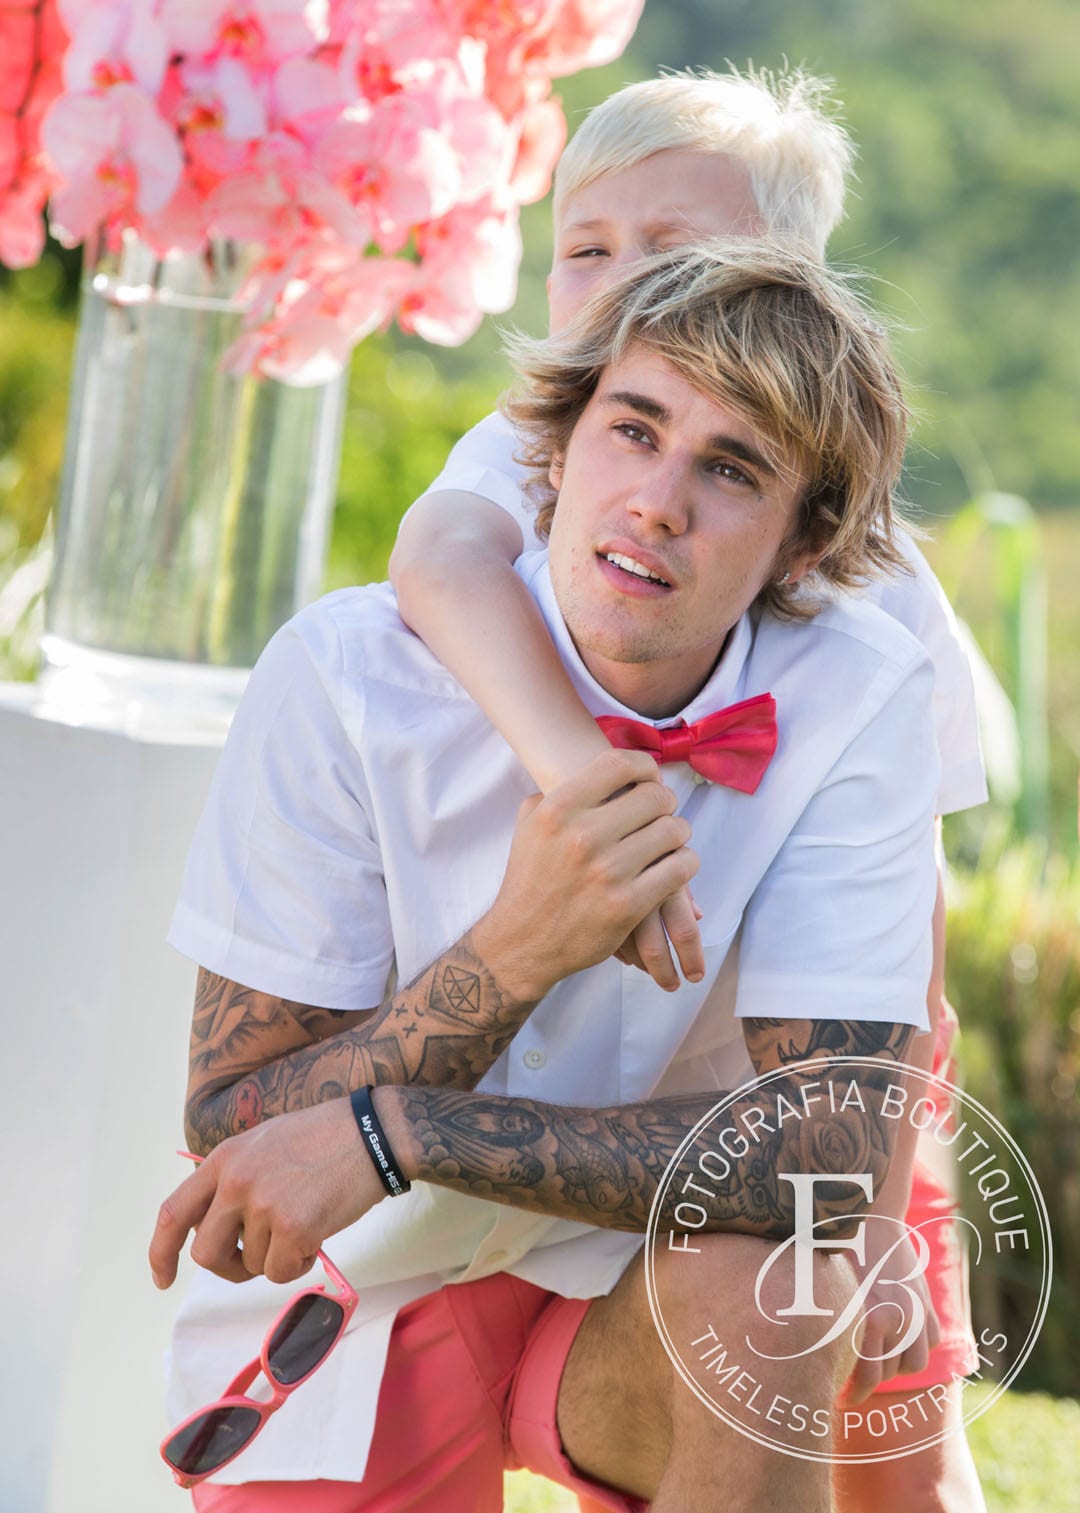 Bieber Wedding - Justin Bieber and brother Jaxon